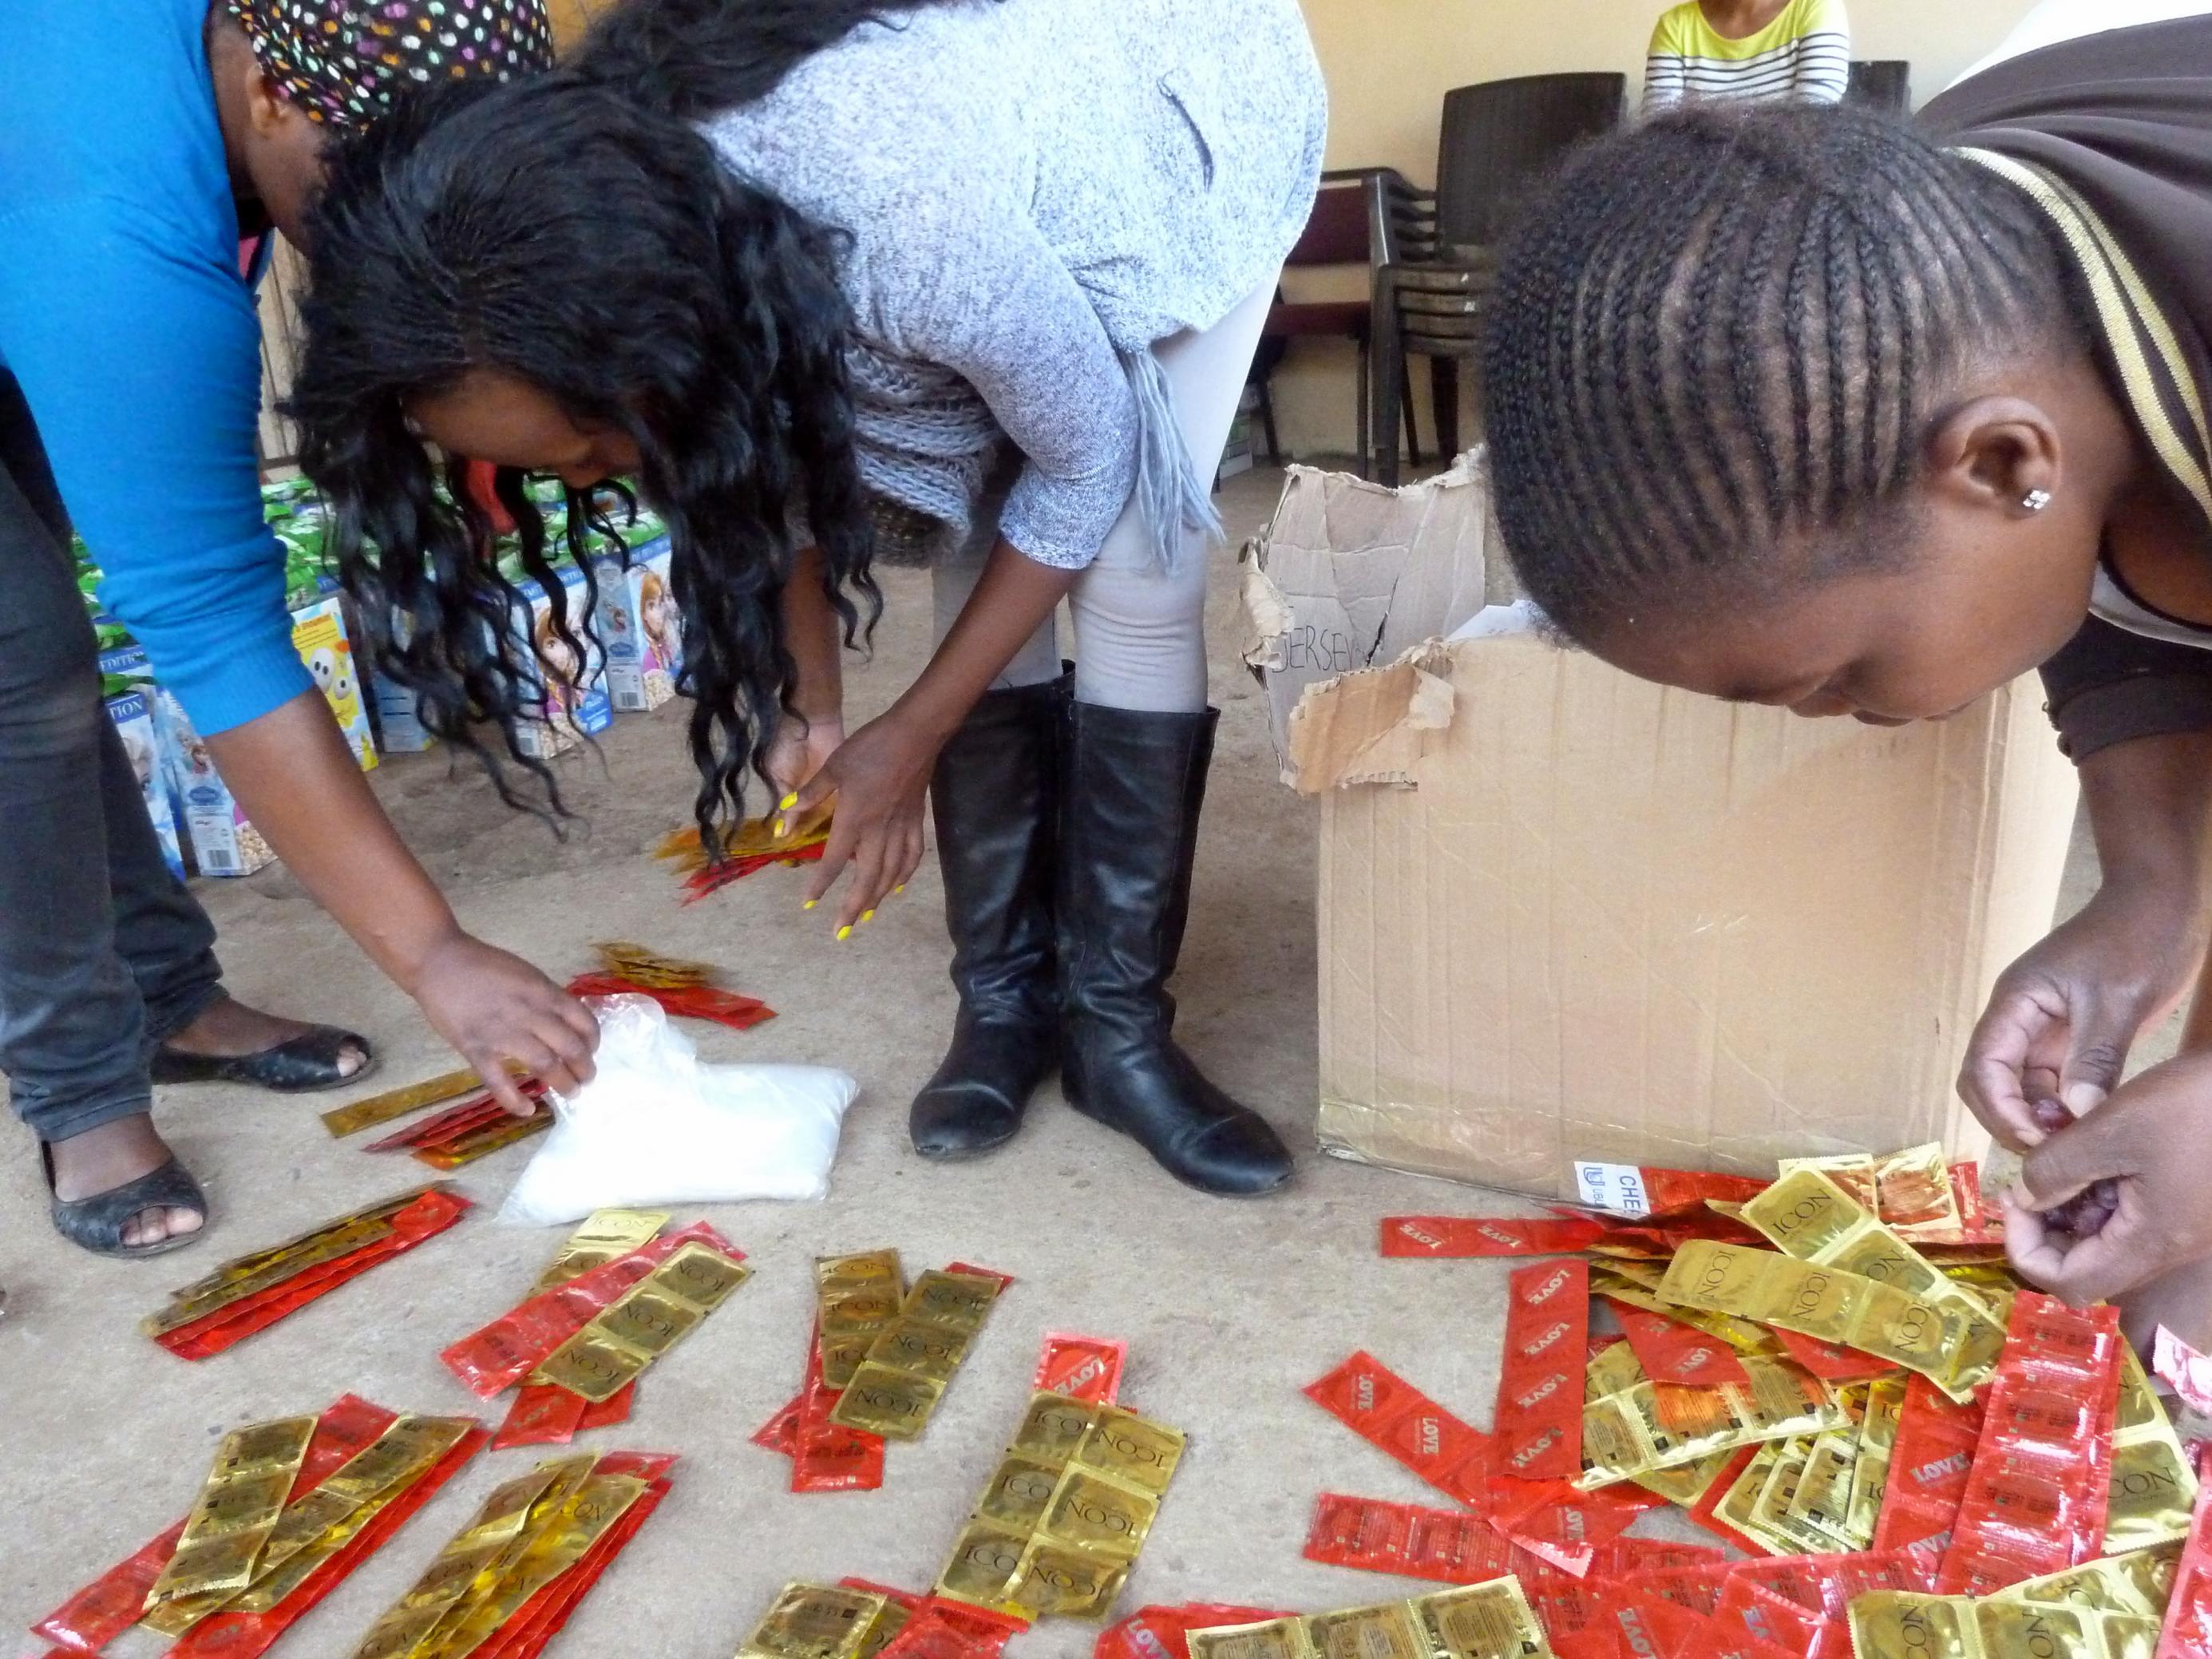 Aktivistinnen beugen sich über verpackte Kondome, die auf dem Boden liegen, um sie für die Verteilung zurechtzulegen.